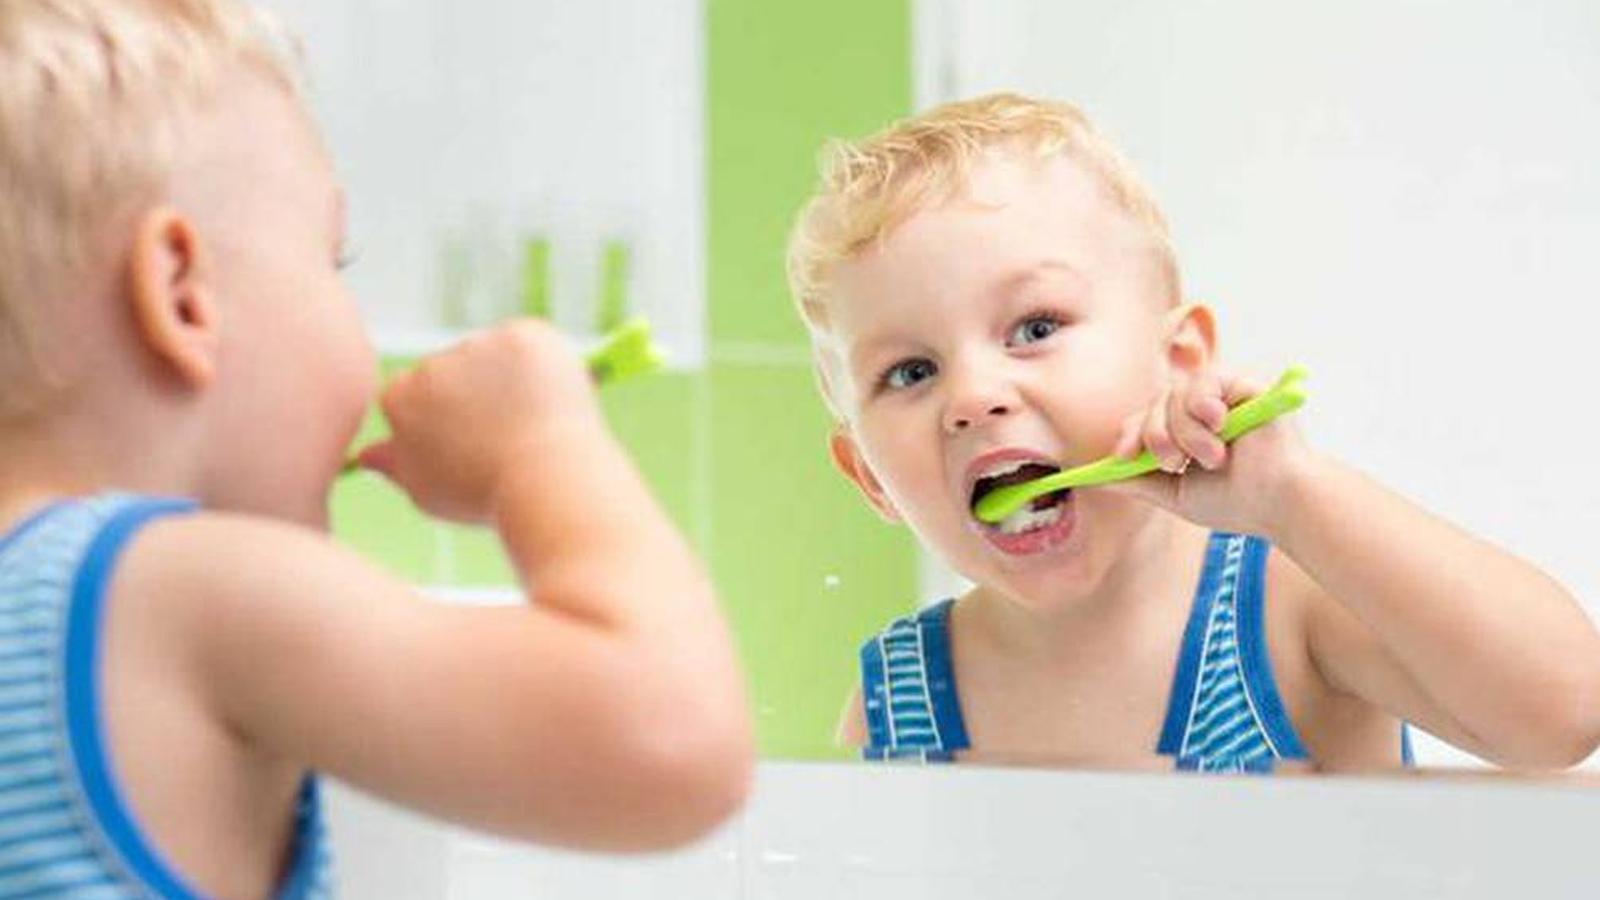 Răng trẻ bị vàng ảnh hưởng đến sức khỏe của trẻ như thế nào?
